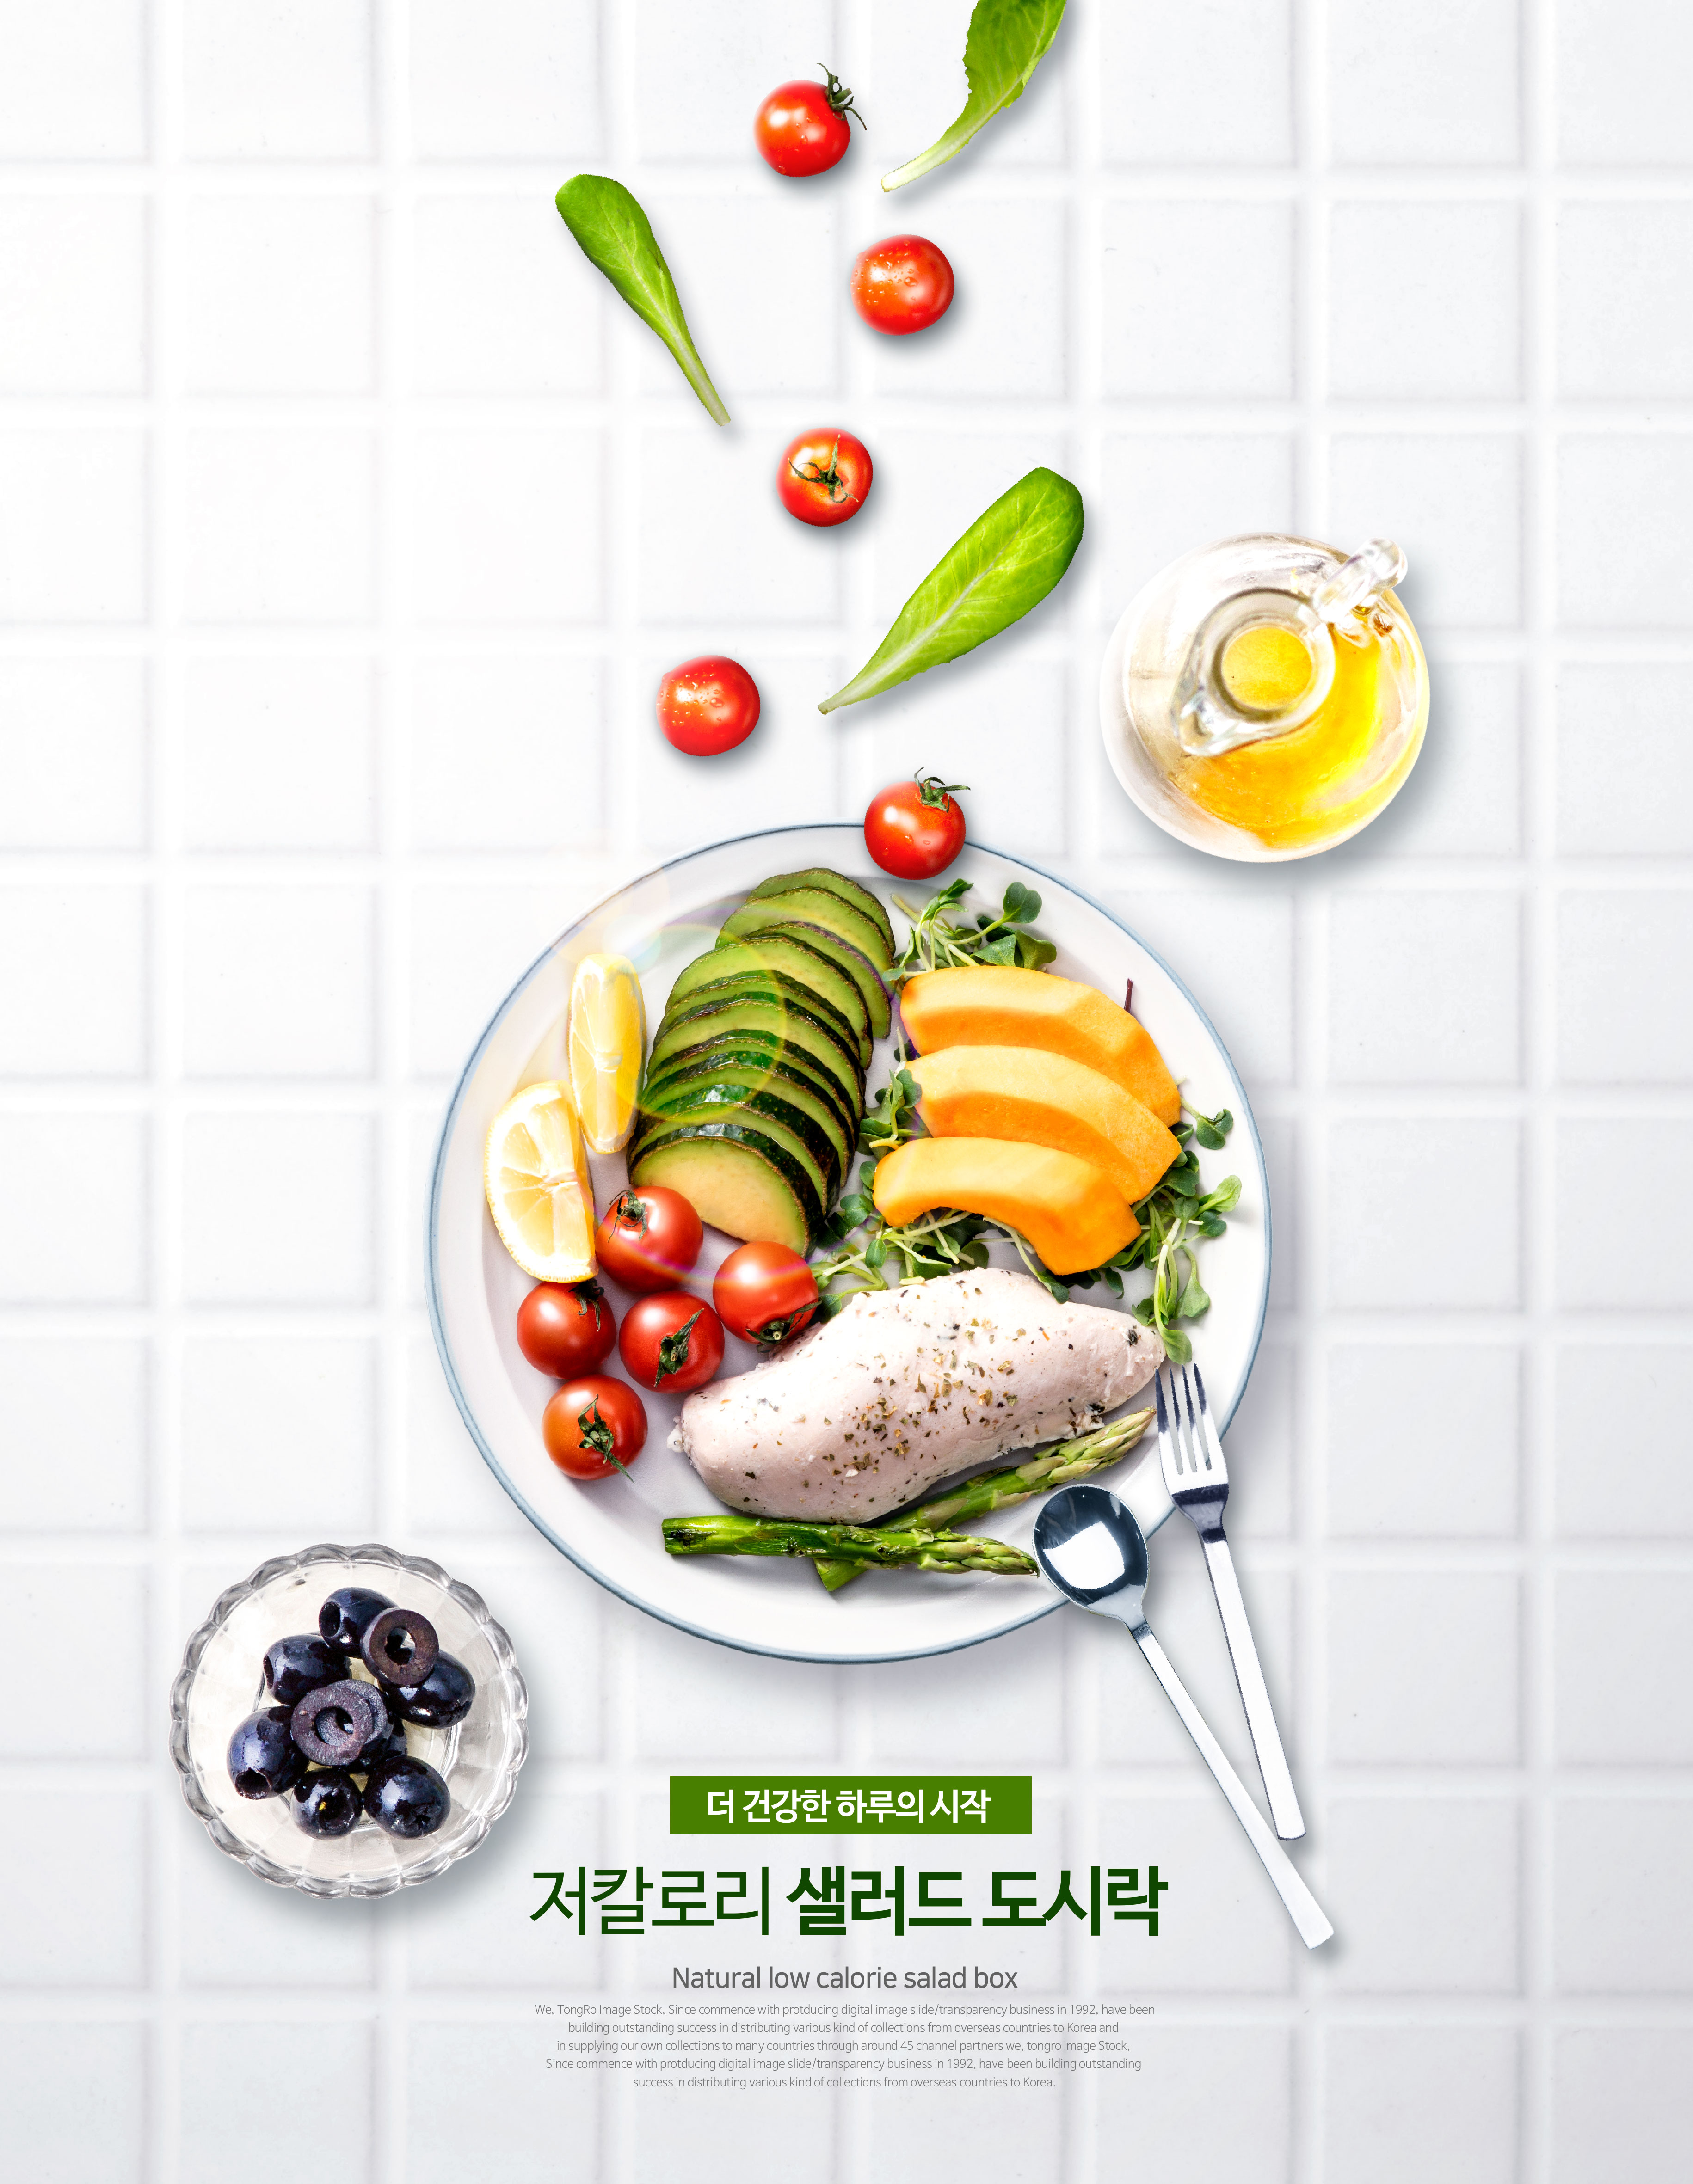 低卡路里沙拉便当食品广告海报设计模板插图